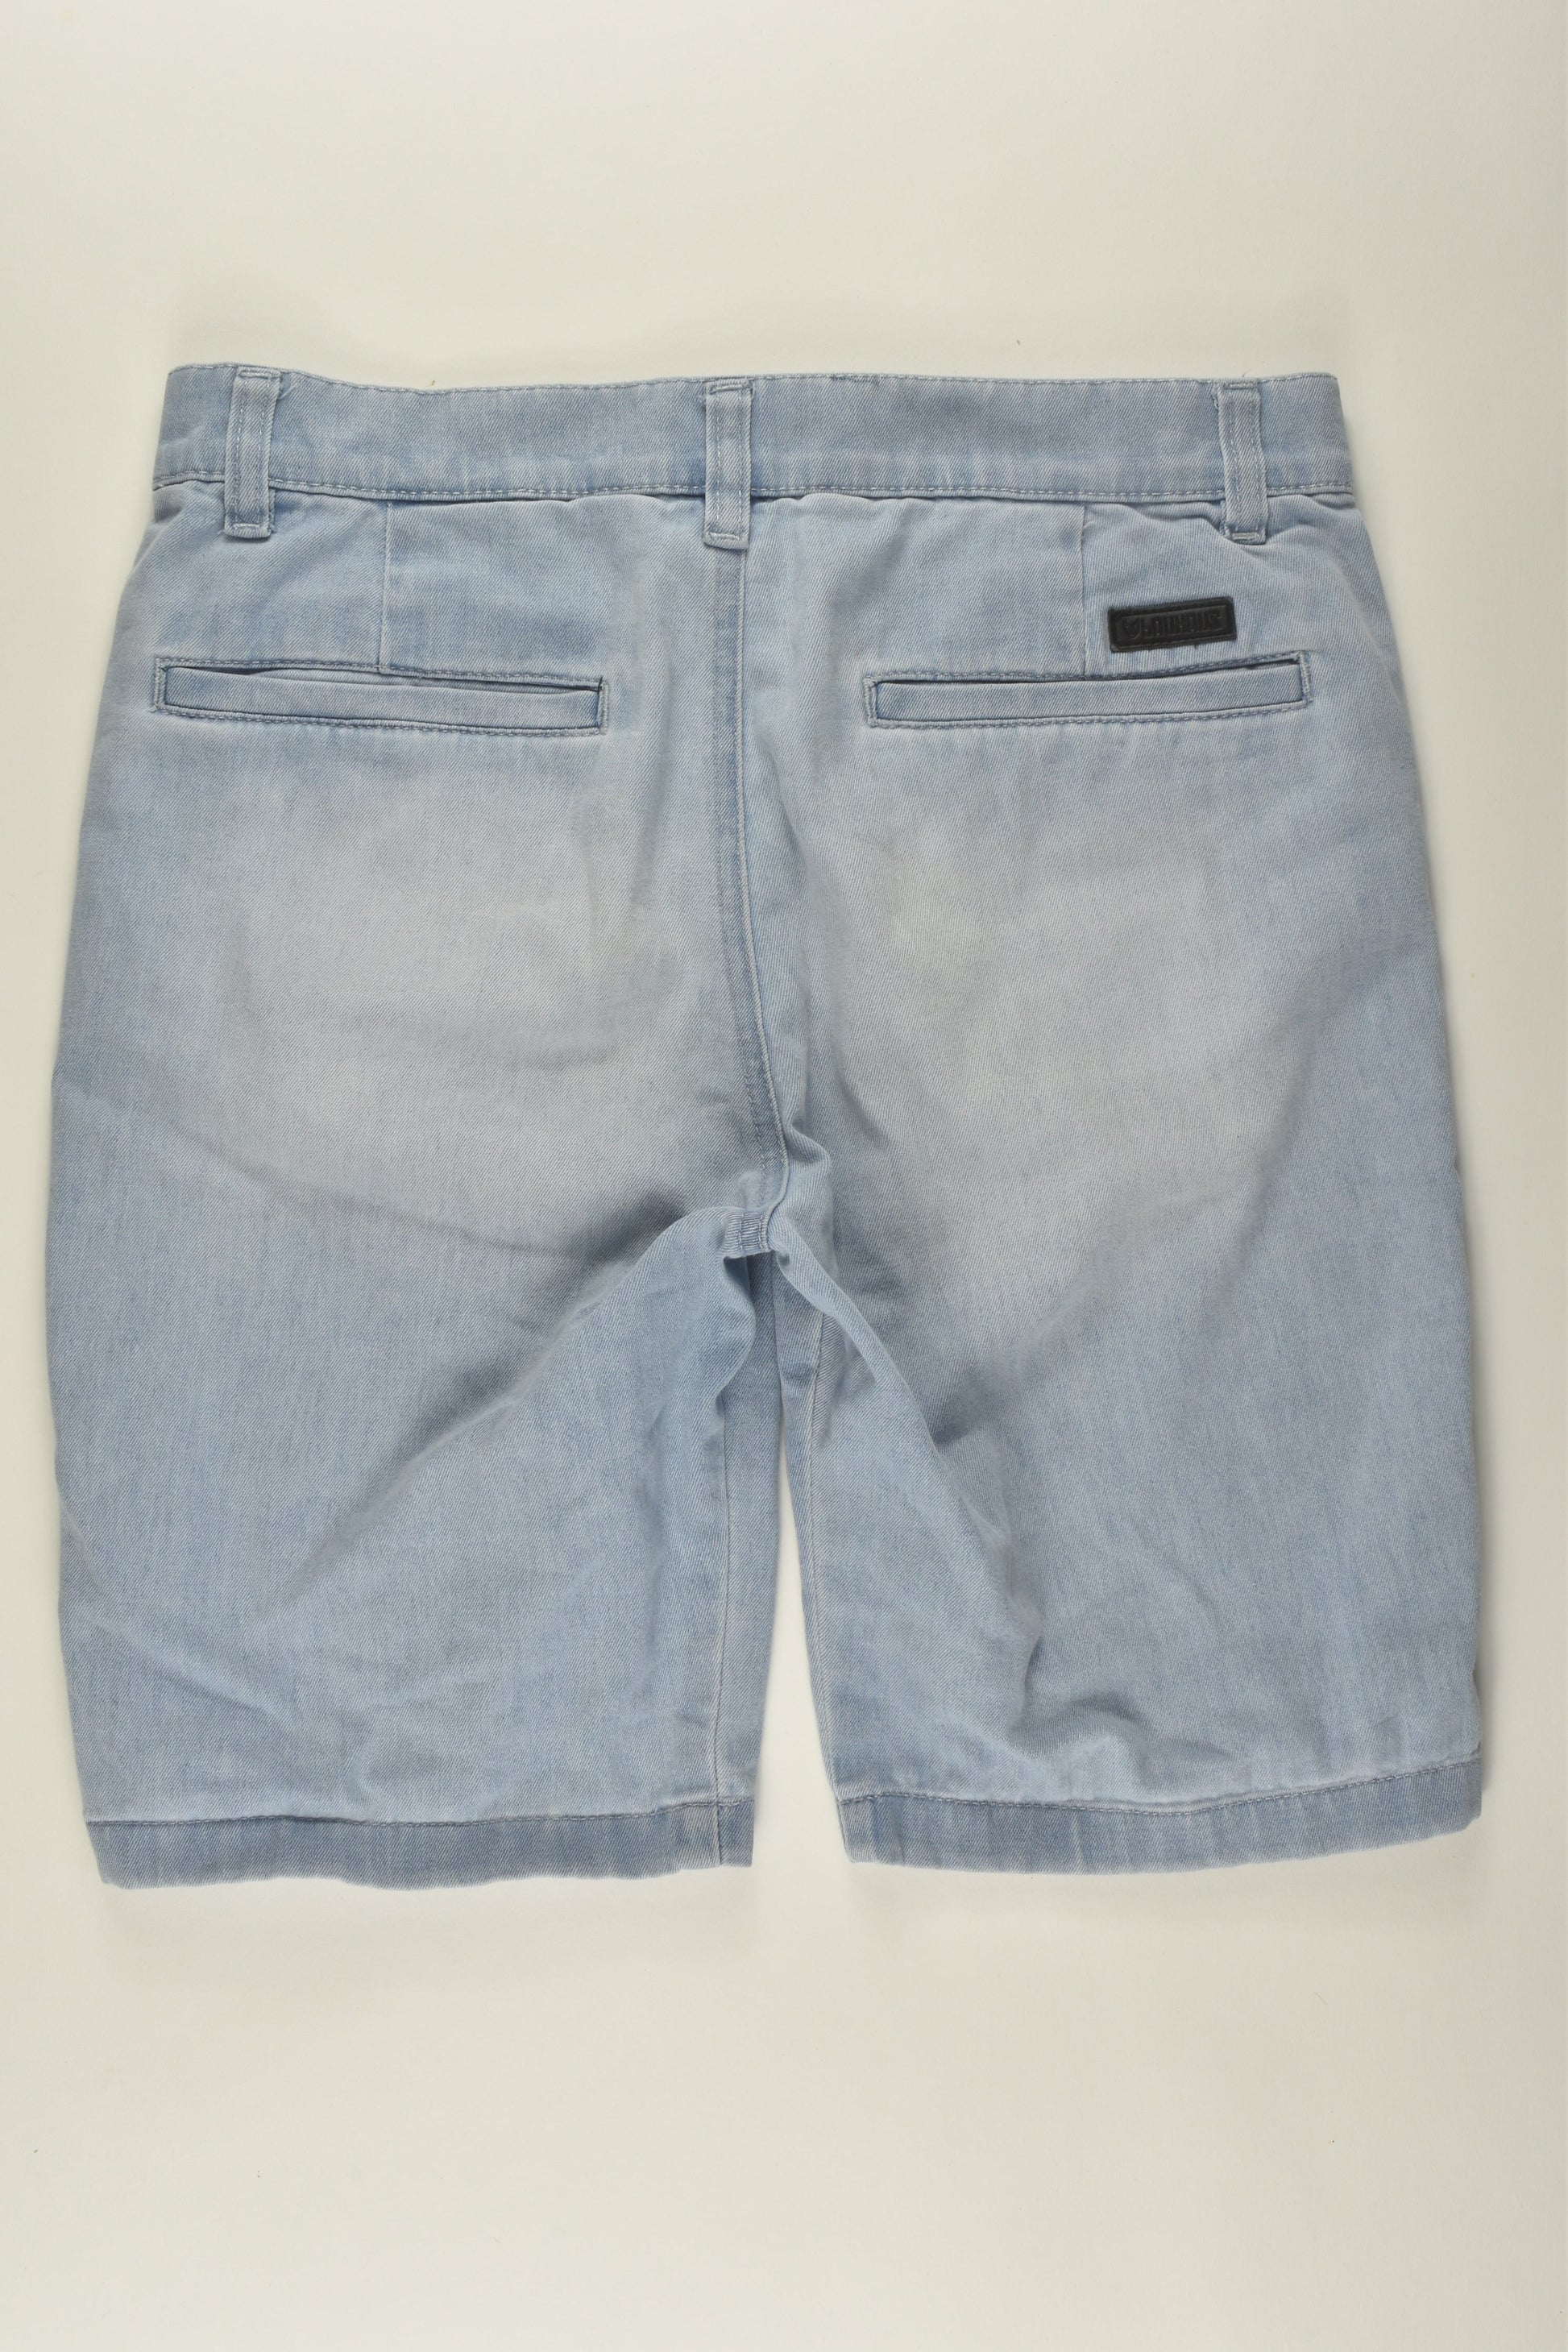 Bauhaus Size 12 Lightweight Denim Shorts